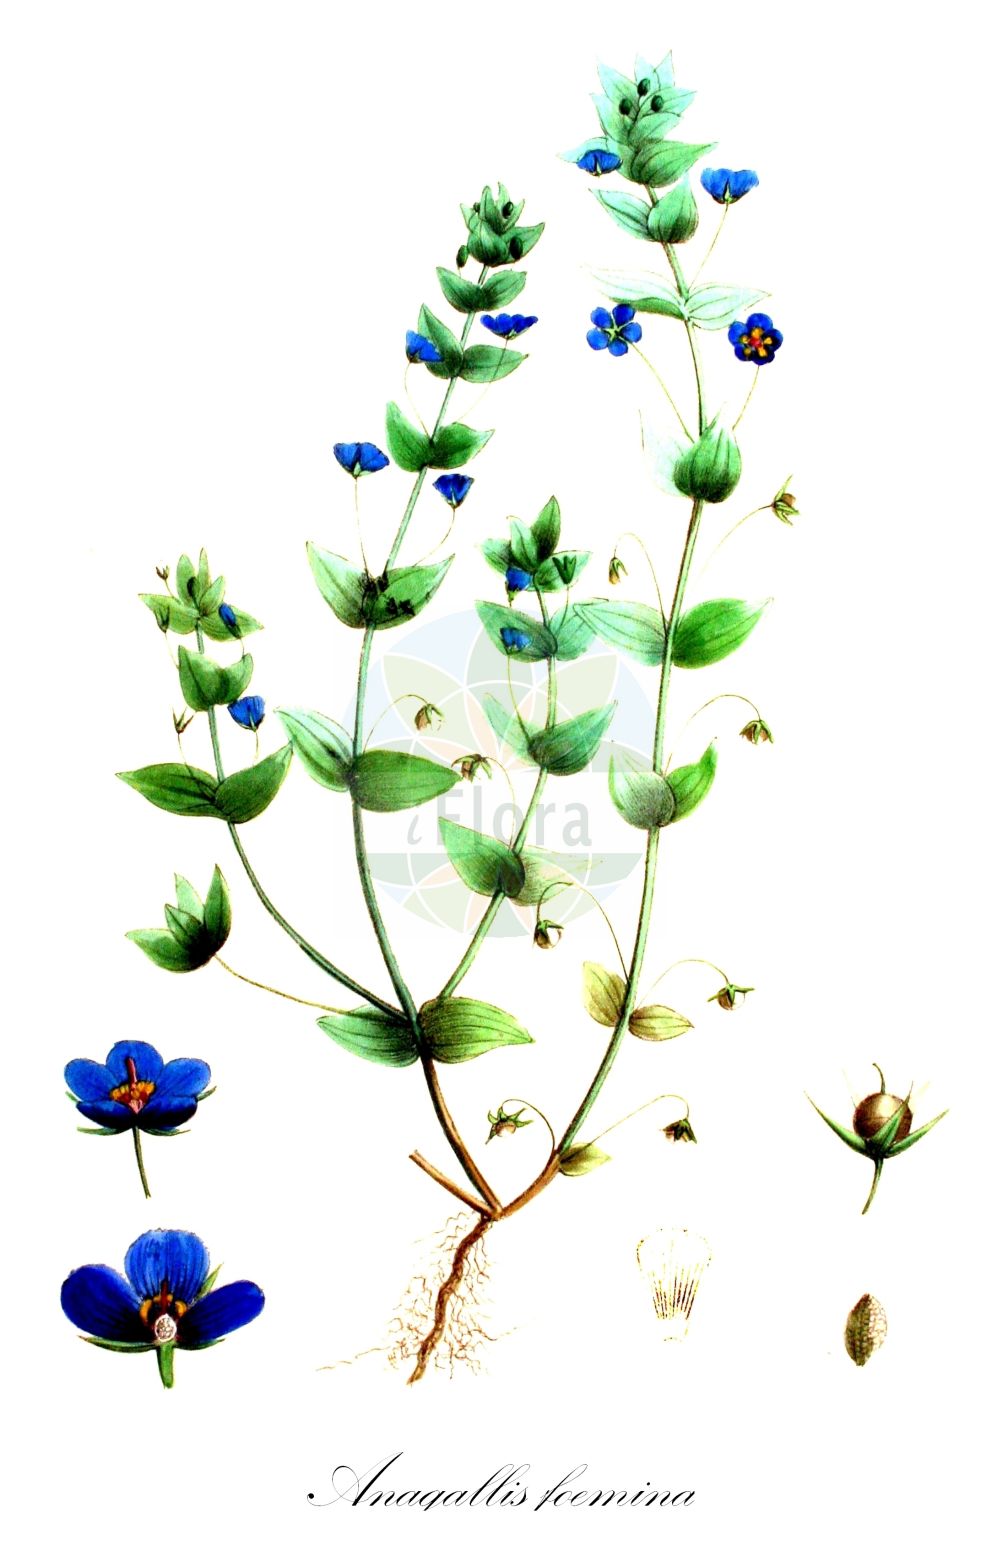 Historische Abbildung von Anagallis foemina (Blauer Gauchheil - Blue Pimpernel). Das Bild zeigt Blatt, Bluete, Frucht und Same. ---- Historical Drawing of Anagallis foemina (Blauer Gauchheil - Blue Pimpernel). The image is showing leaf, flower, fruit and seed.(Anagallis foemina,Blauer Gauchheil,Blue Pimpernel,Anagallis foemina,Blauer Gauchheil,Blue Pimpernel,Poorman's Weatherglass,Anagallis,Gauchheil,Pimpernel,Primulaceae,Schlüsselblumengewächse,Primrose family,Blatt,Bluete,Frucht,Same,leaf,flower,fruit,seed,Kops (1800-1934))